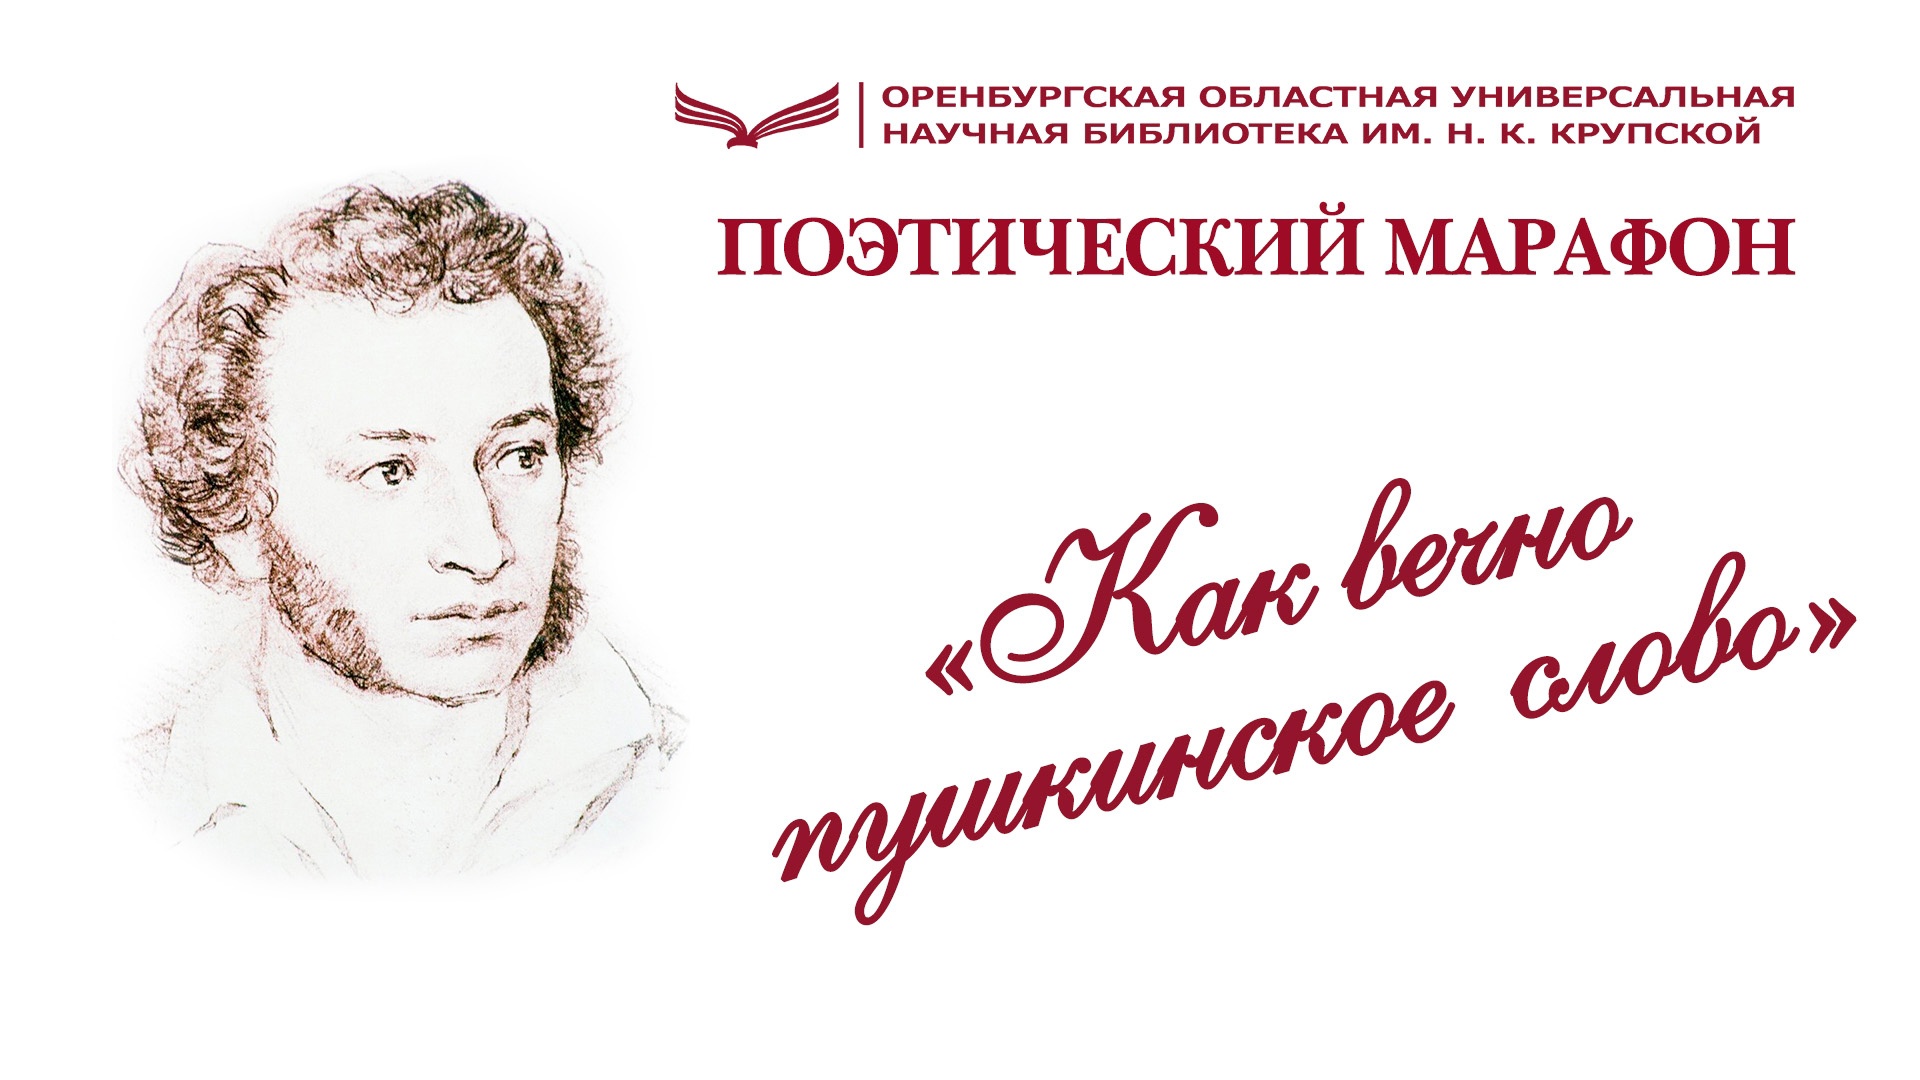 Национальный проект «Культура». Поэтический марафон «Как вечно пушкинское слово» можно посмотреть онлайн